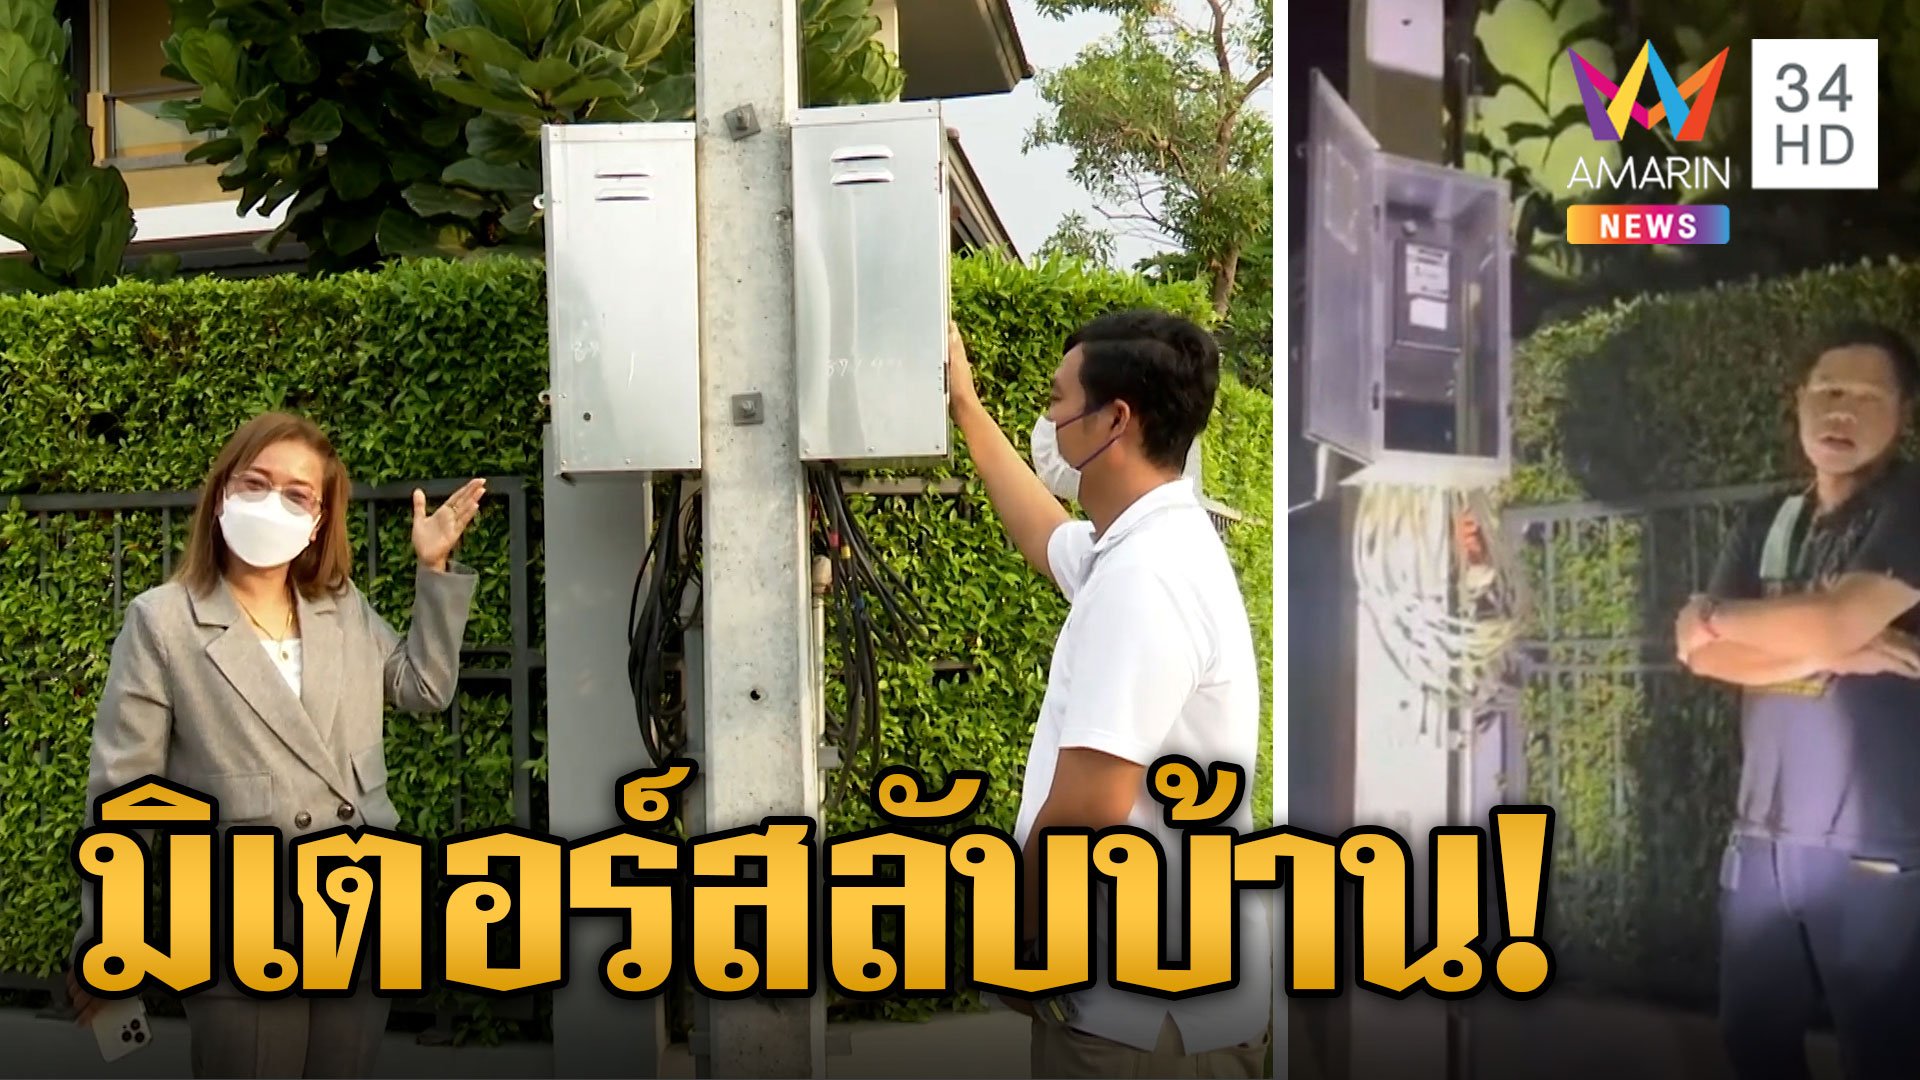 สาวสุดงง! มิเตอร์ไฟฟ้าสลับบ้าน 2 ปี จ่ายเงินแทนเพื่อนบ้านเป็นแสน | ข่าวอรุณอมรินทร์ | 26 เม.ย. 66 | AMARIN TVHD34